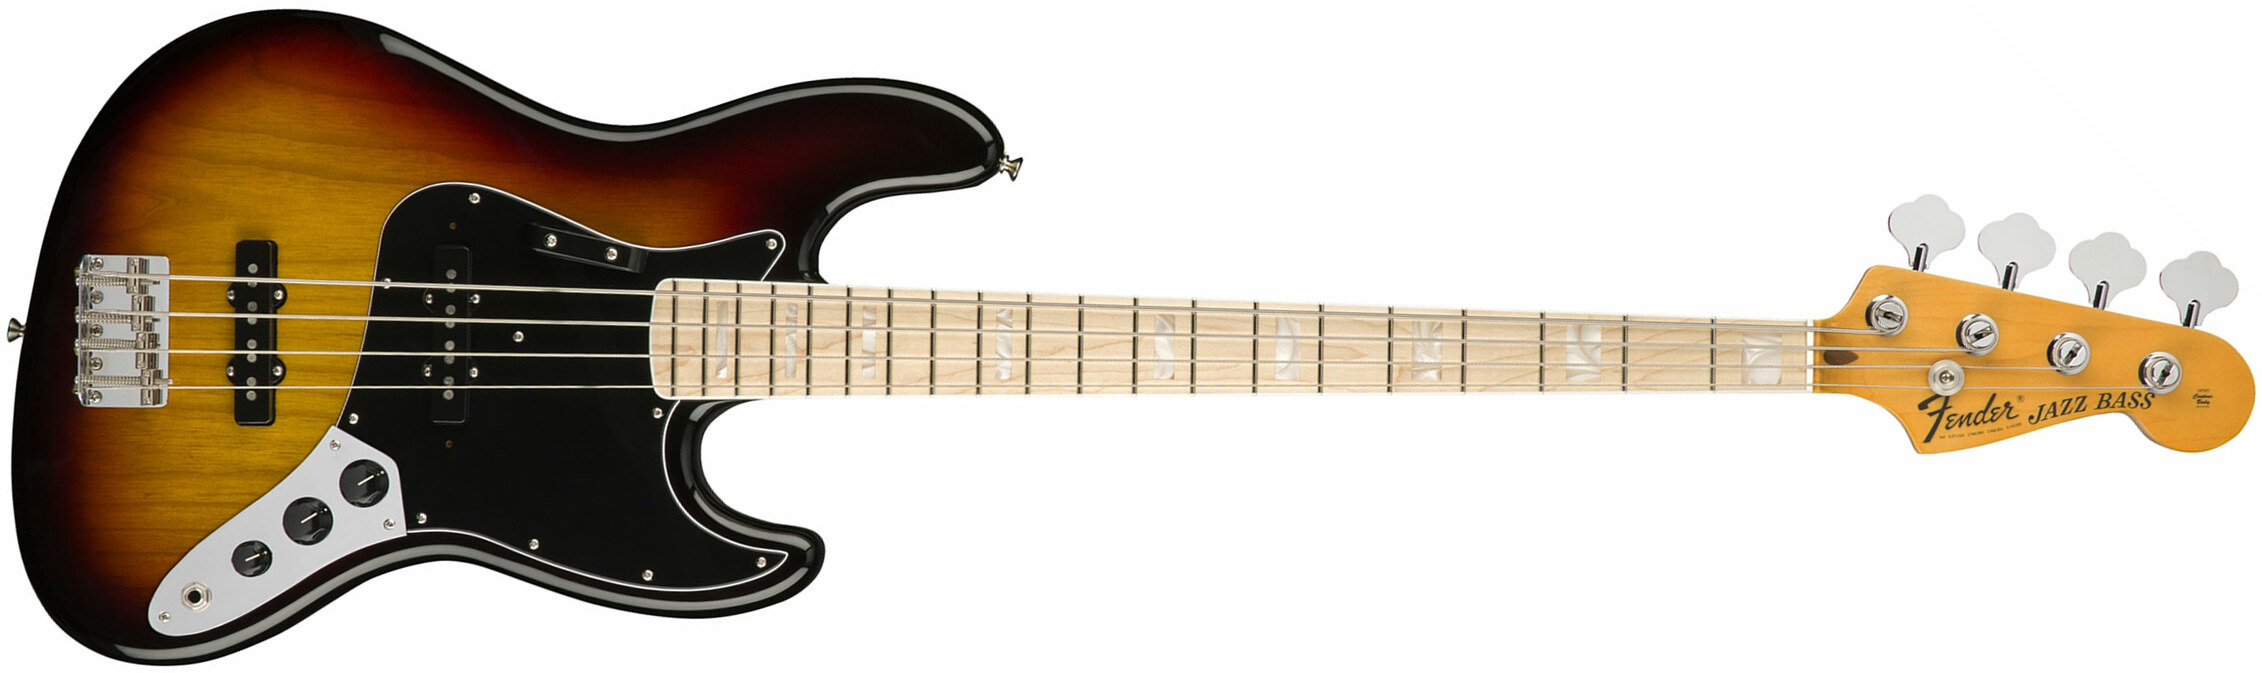 Fender Jazz Bass '70s American Original Usa Mn - 3-color Sunburst - Basse Électrique Solid Body - Main picture